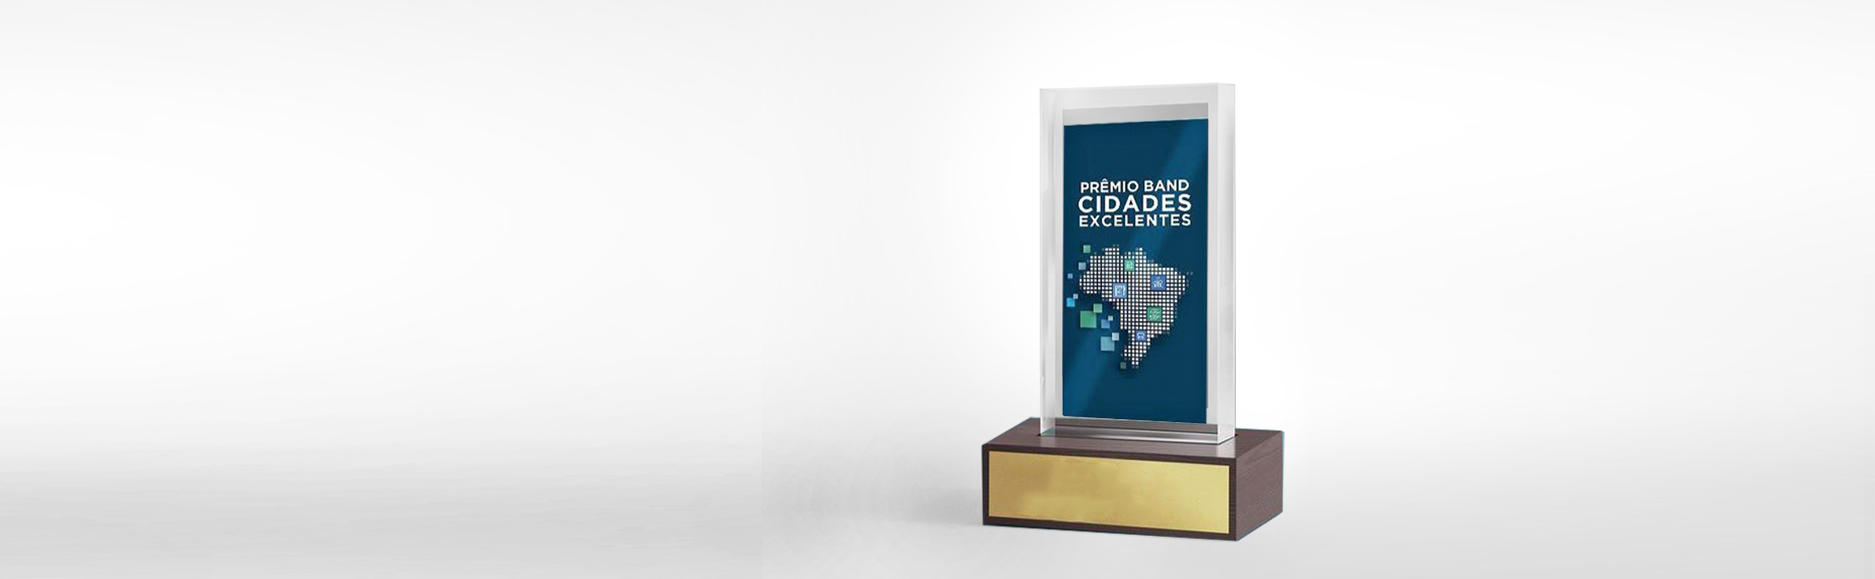 Prêmio Band Cidades Excelentes coloca 6 clientes IPM no pódio do Oscar da Gestão Pública